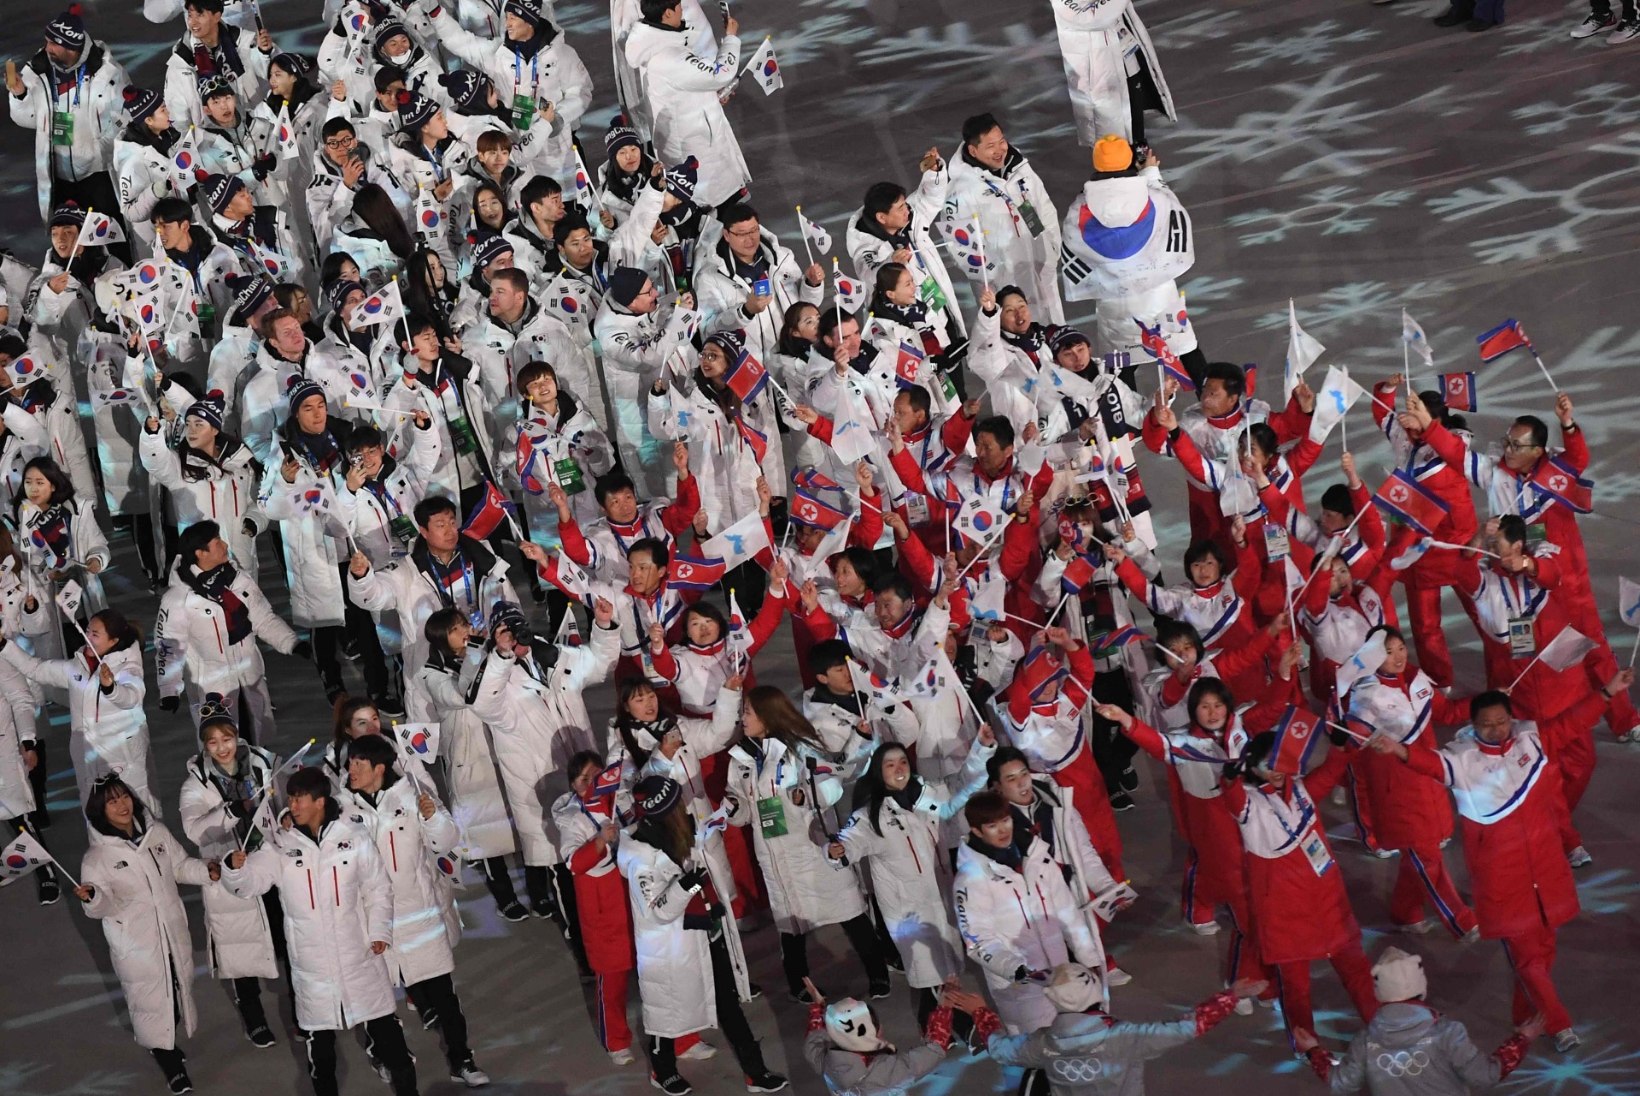 Põhja- ja Lõuna-Korea osalevad Tokyos ühise lipu all vähemalt kolmel alal